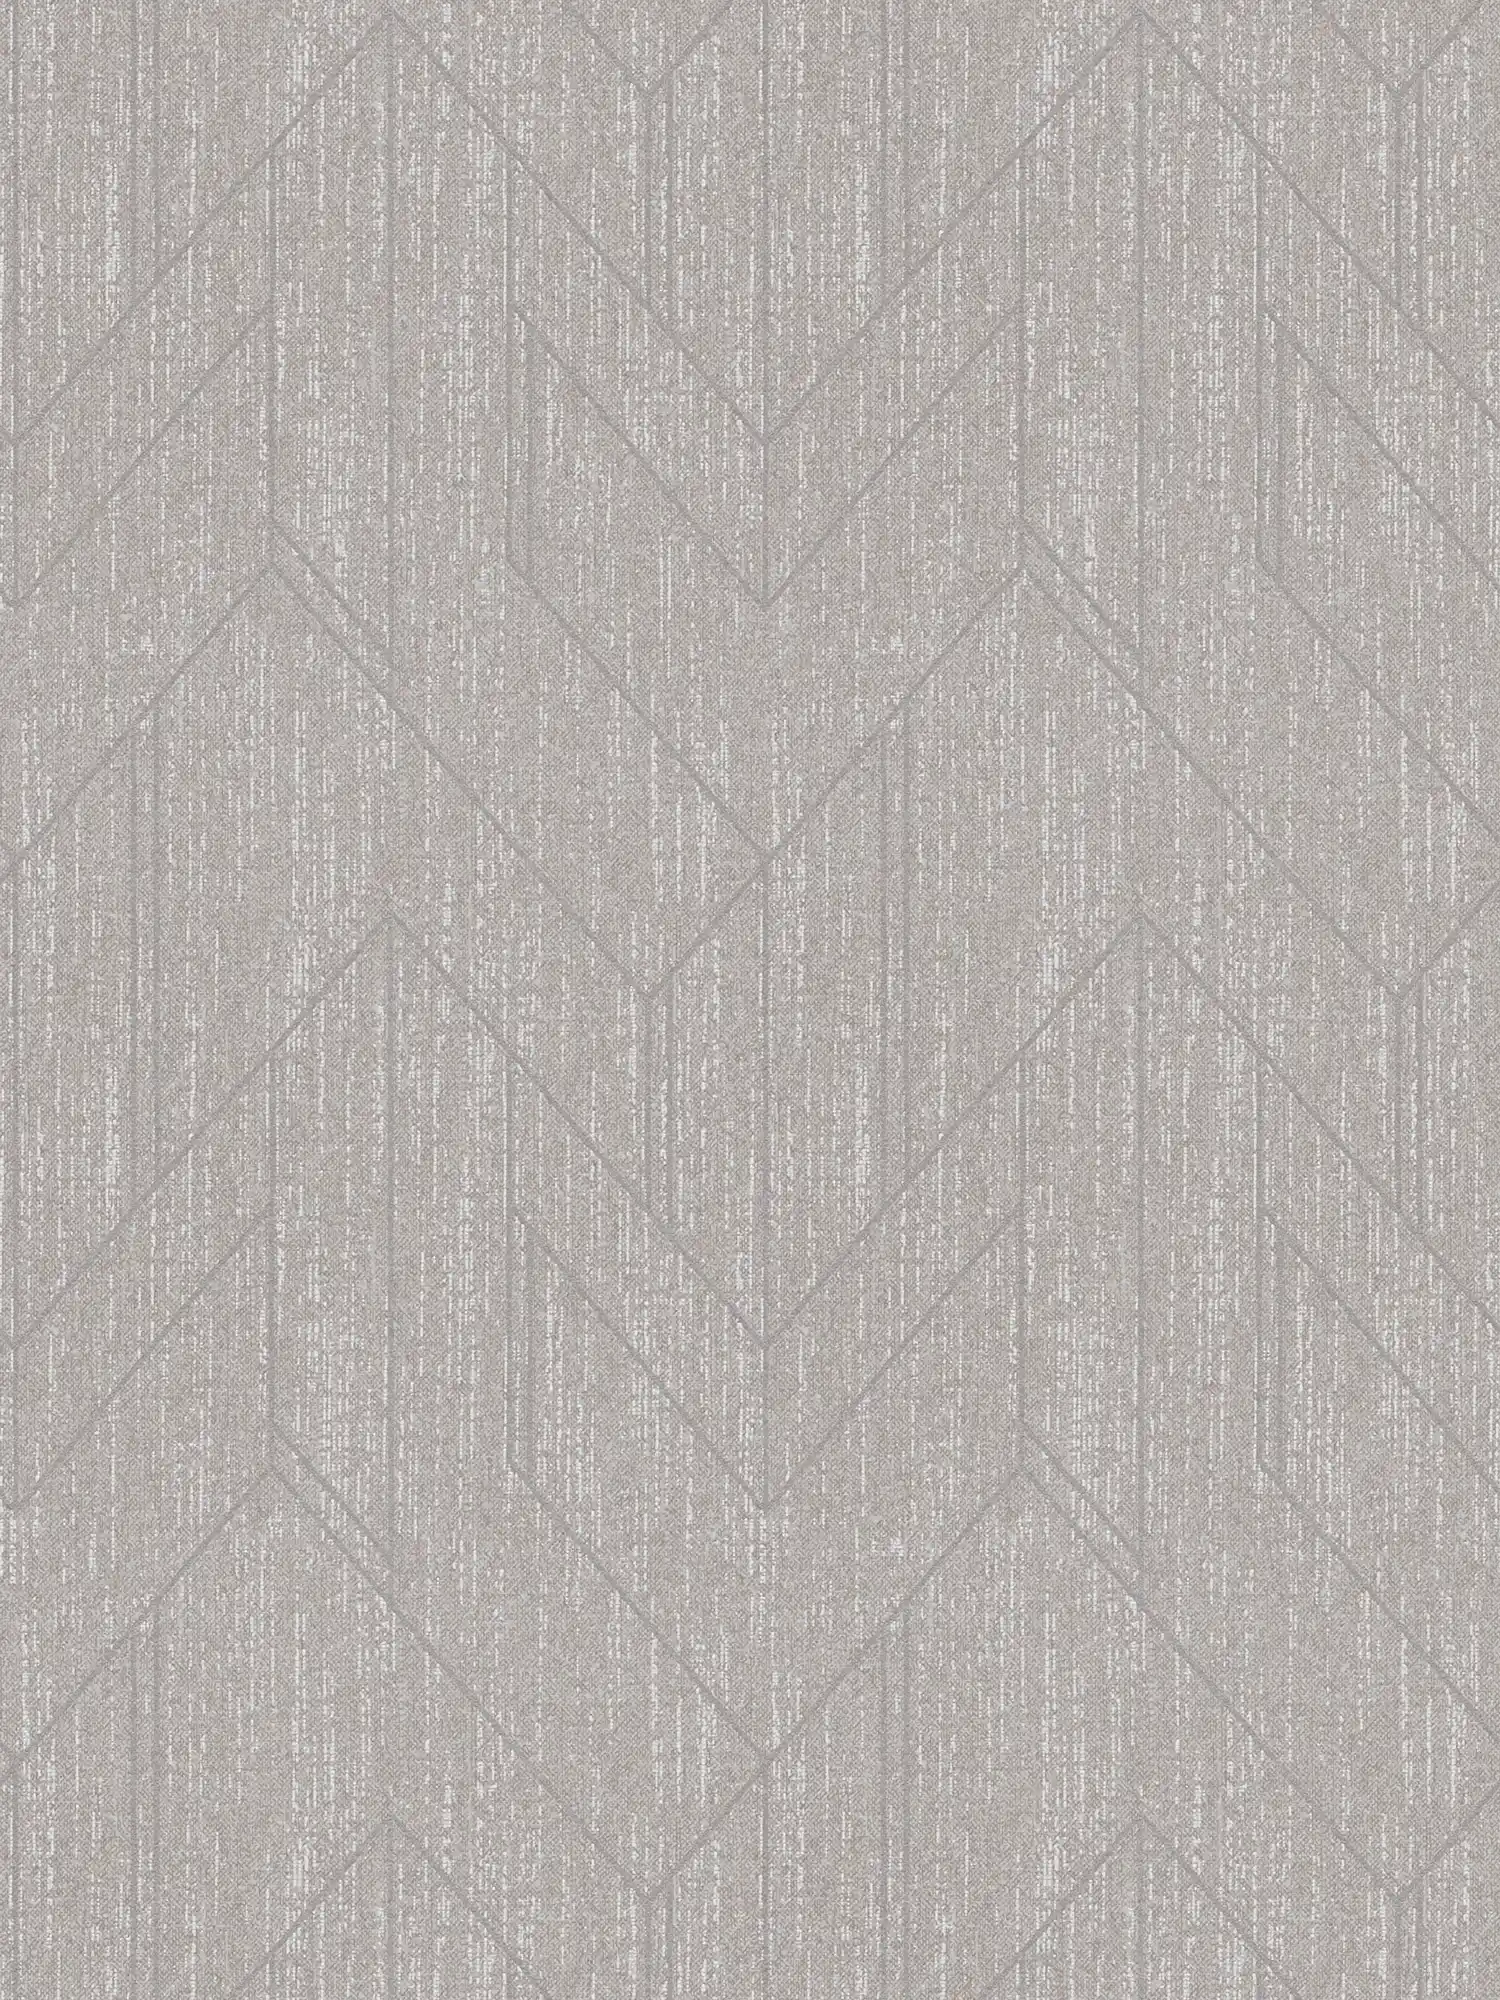 Papier peint aspect textile avec motif structuré & argenté - gris
